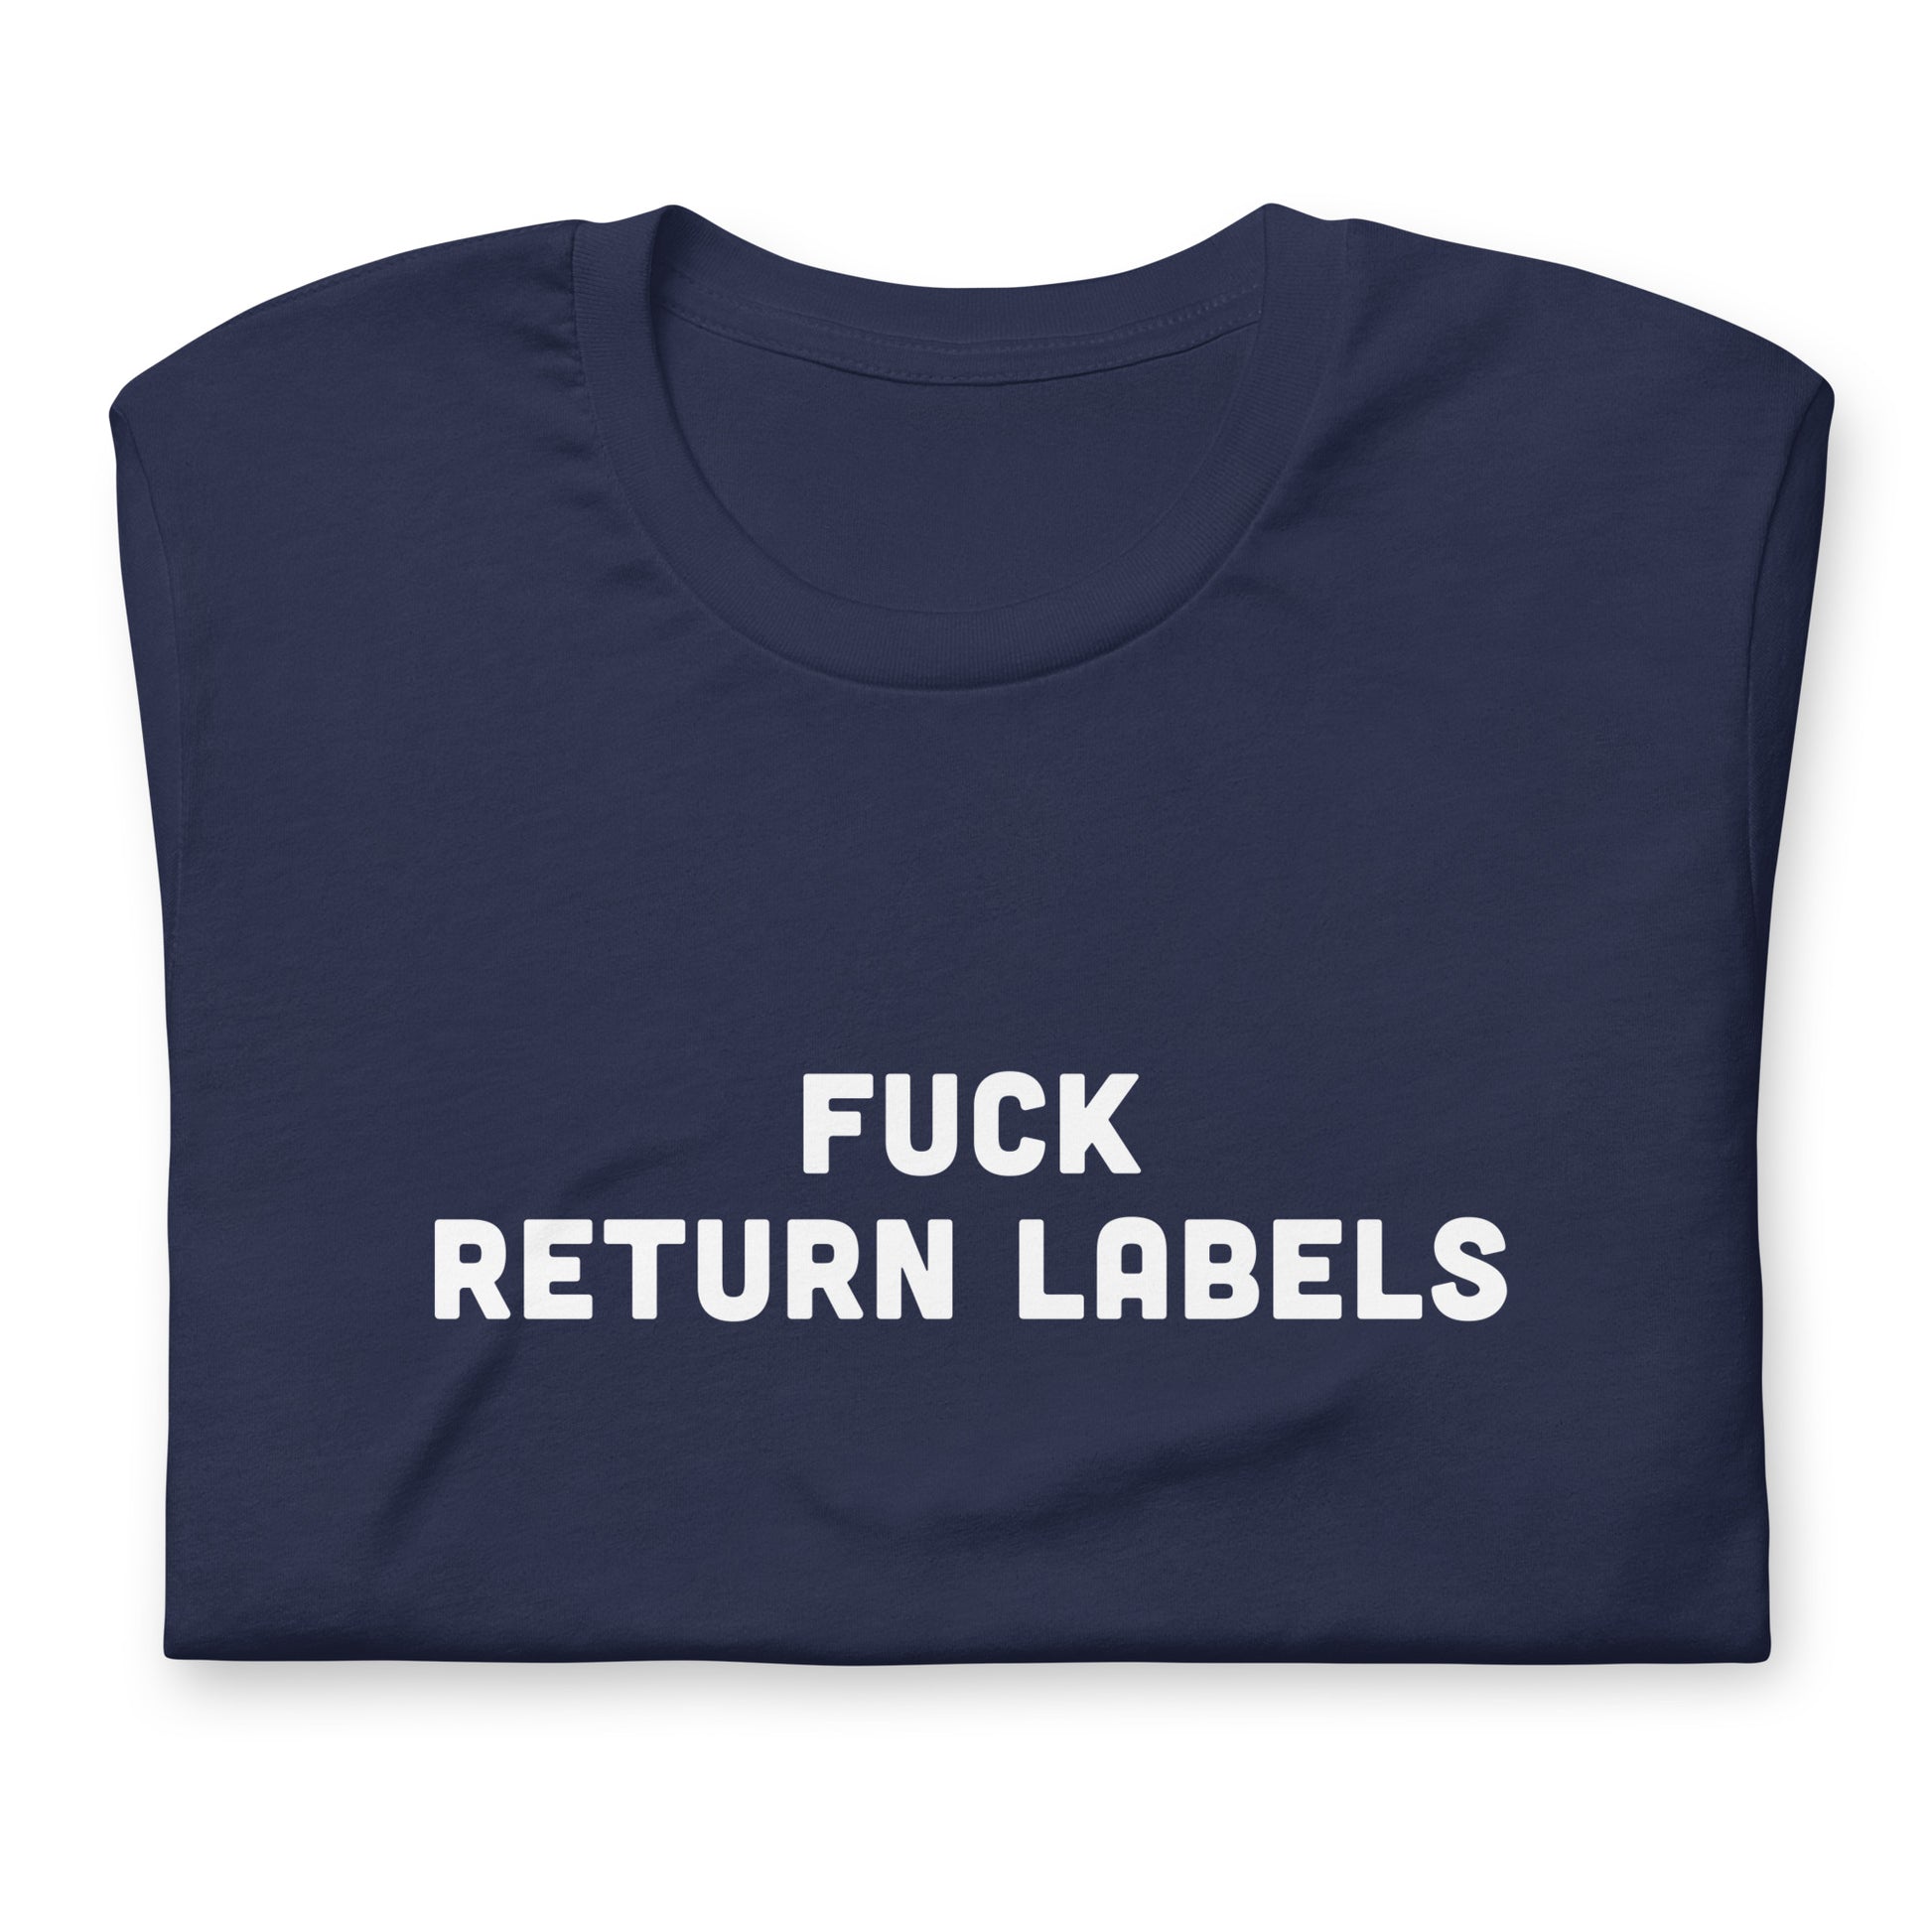 Fuck Return Labels T-Shirt Size L Color Black